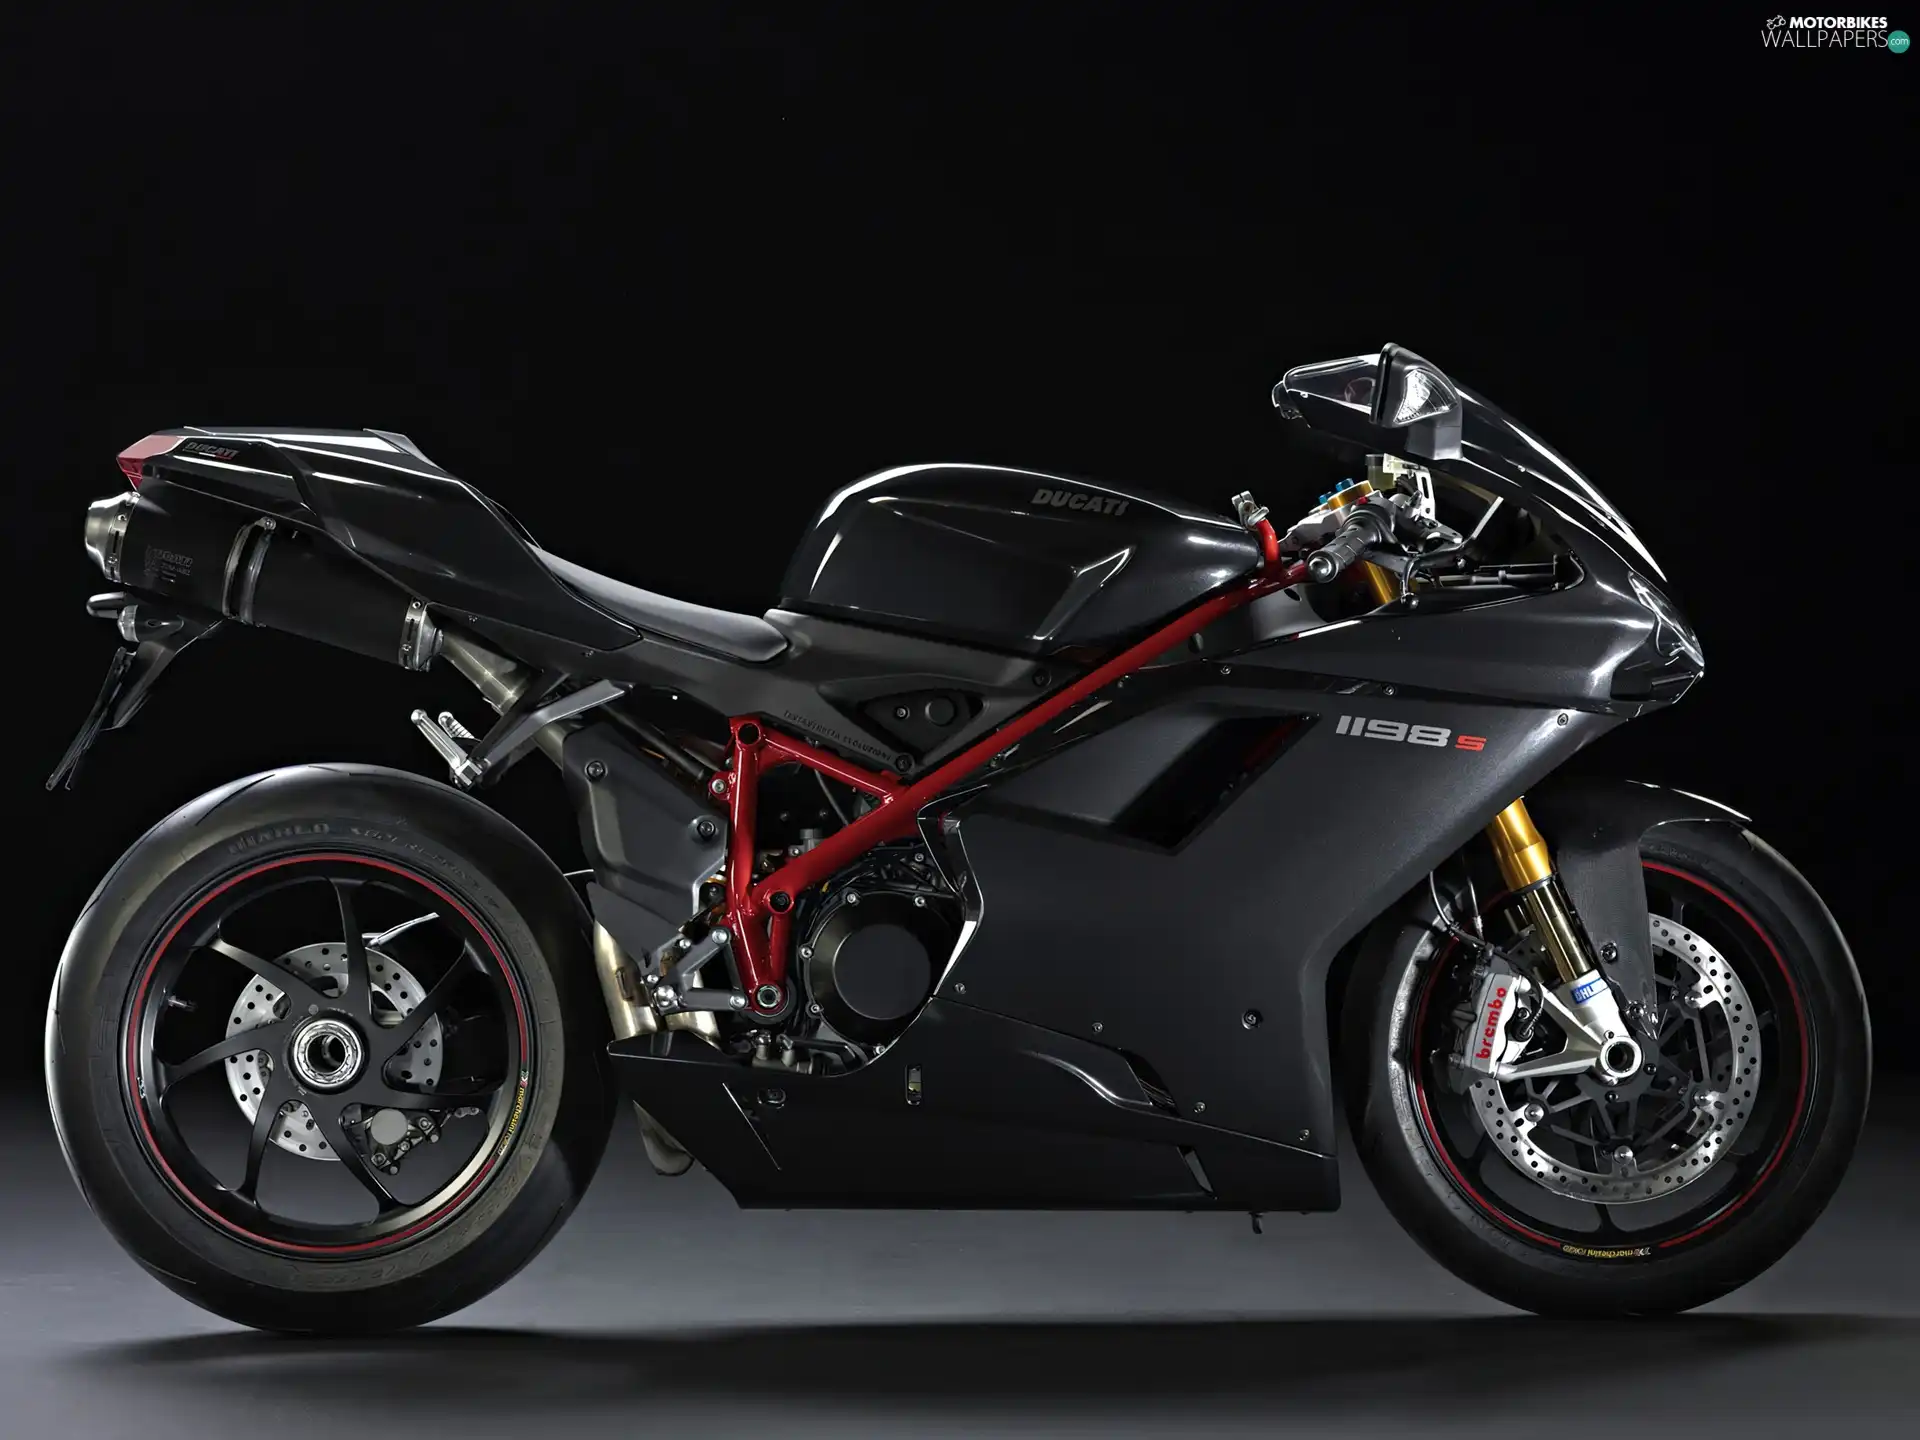 Ducati 1198s, motor-bike, Sport